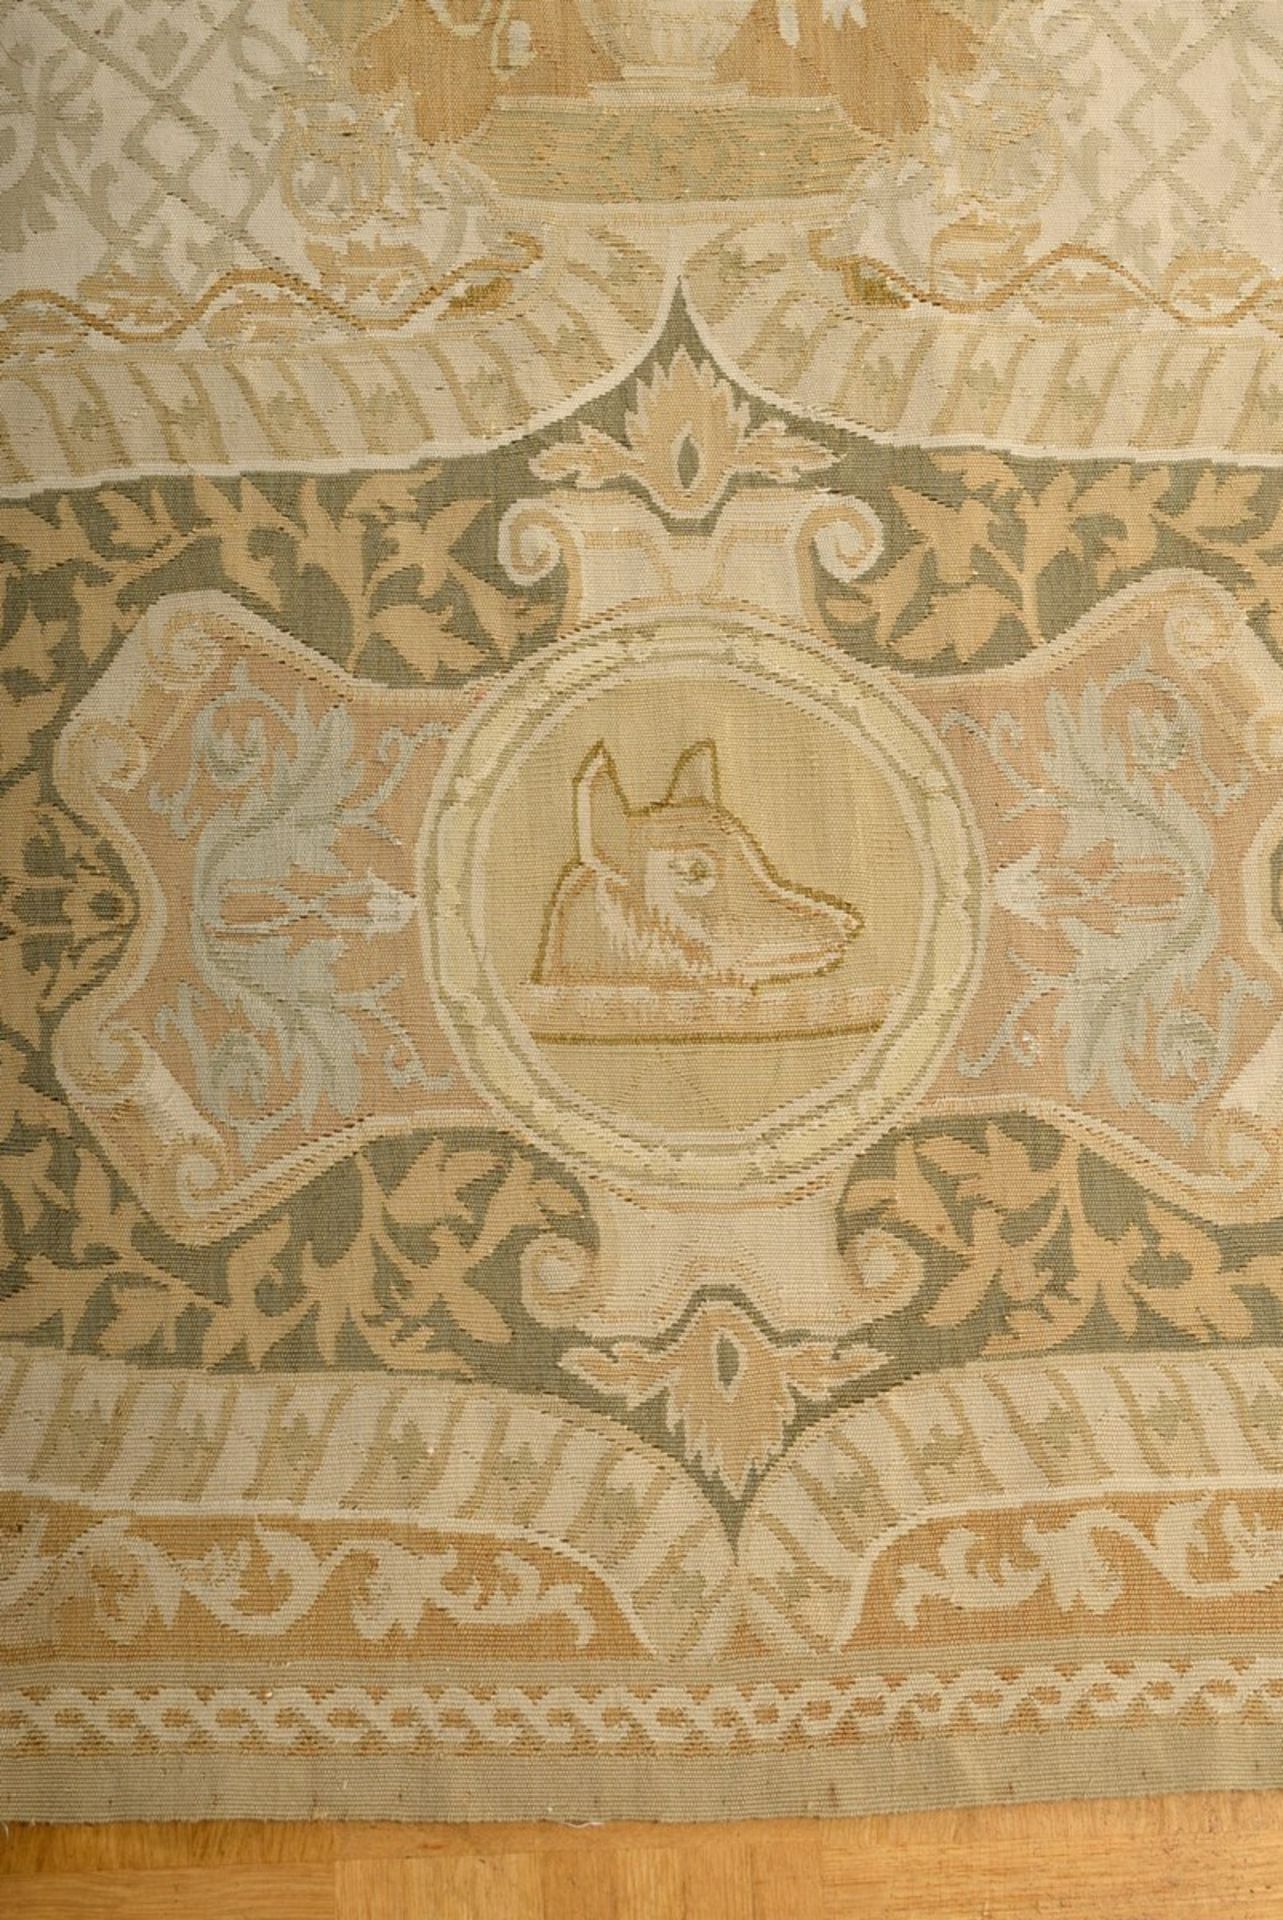 Großer Aubusson Teppich in Grün- und Beigetönen nach altem Vorbild, 20.Jh., 280x310cm - Bild 6 aus 9